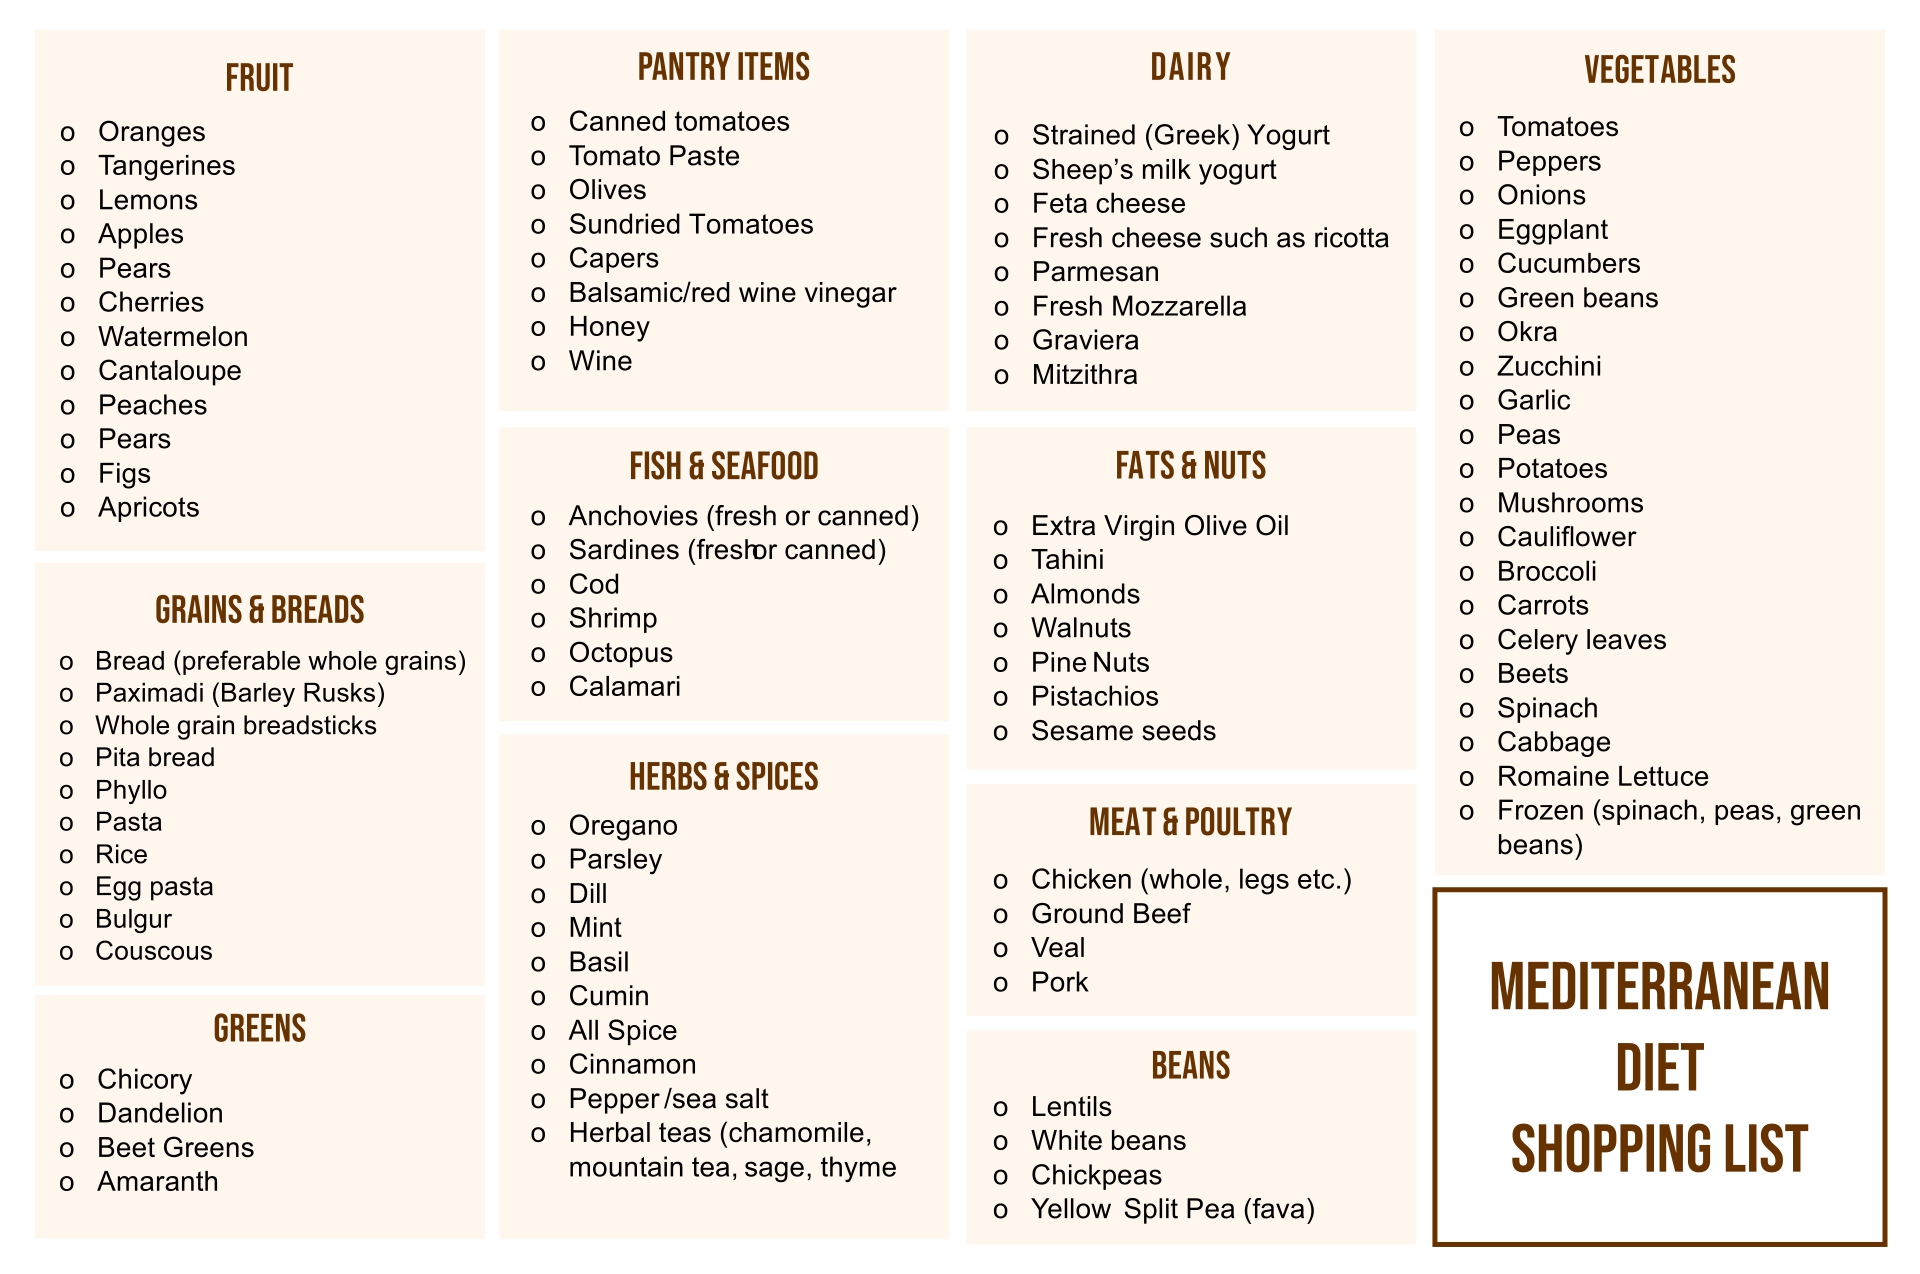 10 Best Mediterranean Diet Food List Printable PDF for Free at